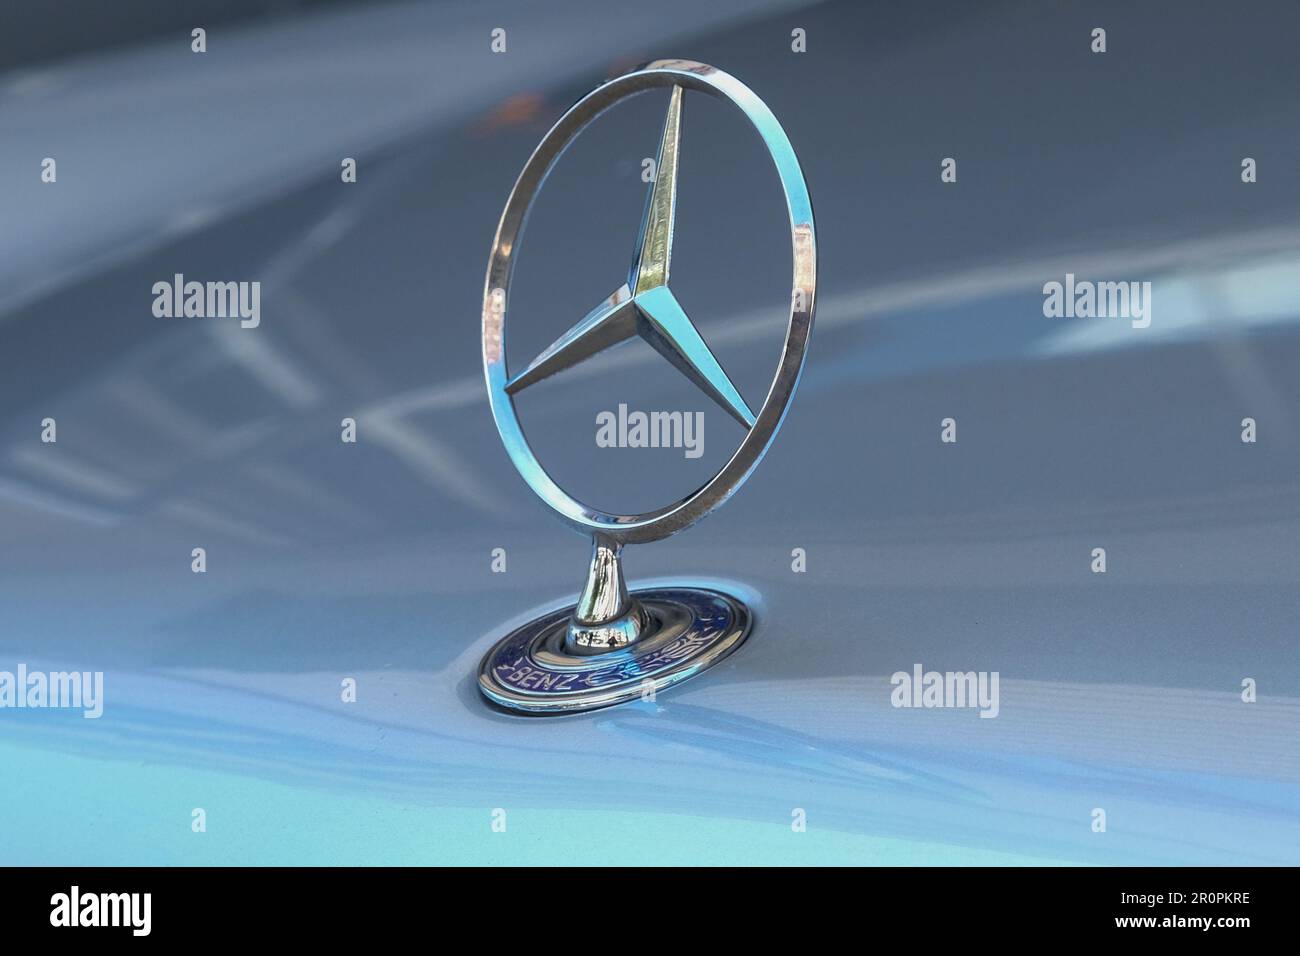 Gros plan de vieux rétro vintage logo d'étoile en métal original de Mercedes Benz au capot de la voiture. Mise au point sélective de l'ancien logo Mercedes. Banque D'Images